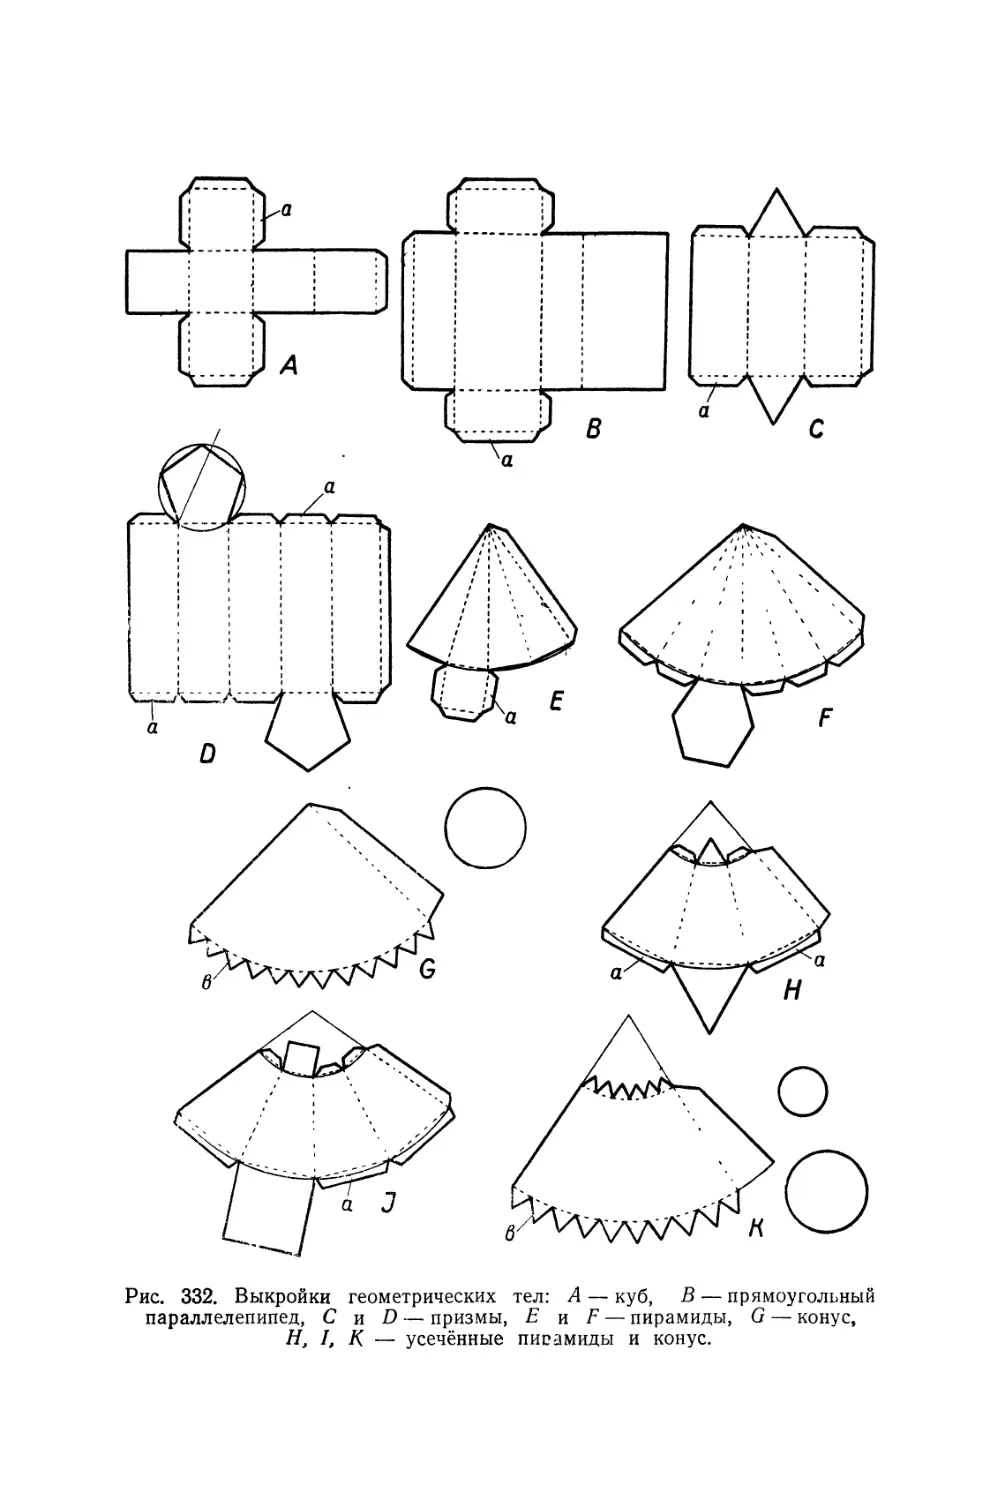 Схема конуса из бумаги для склеивания а4